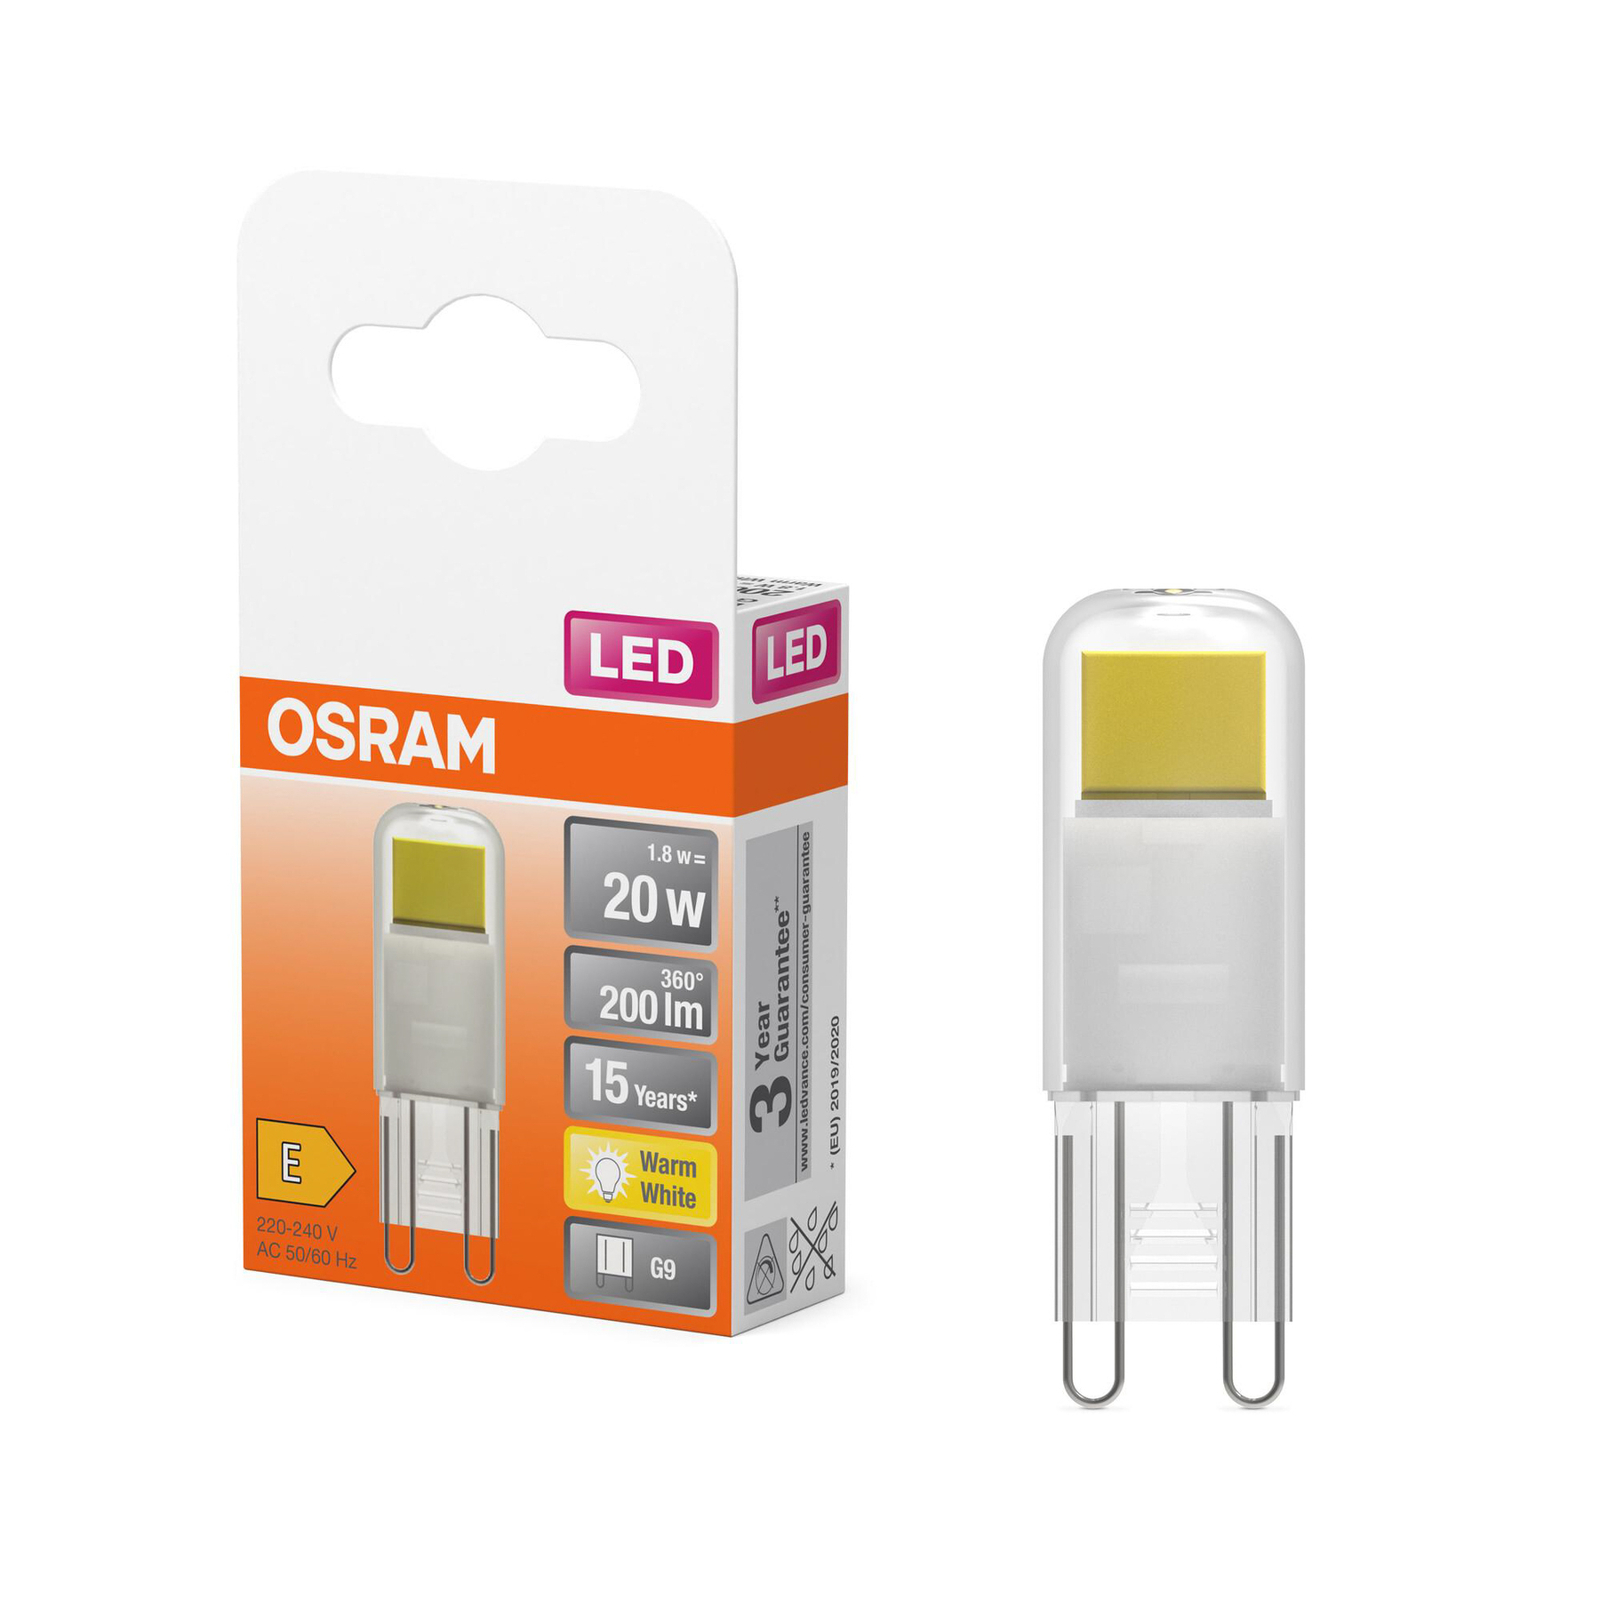 Lâmpada LED OSRAM com casquilho G9 1.8 W transparente 2,700 K